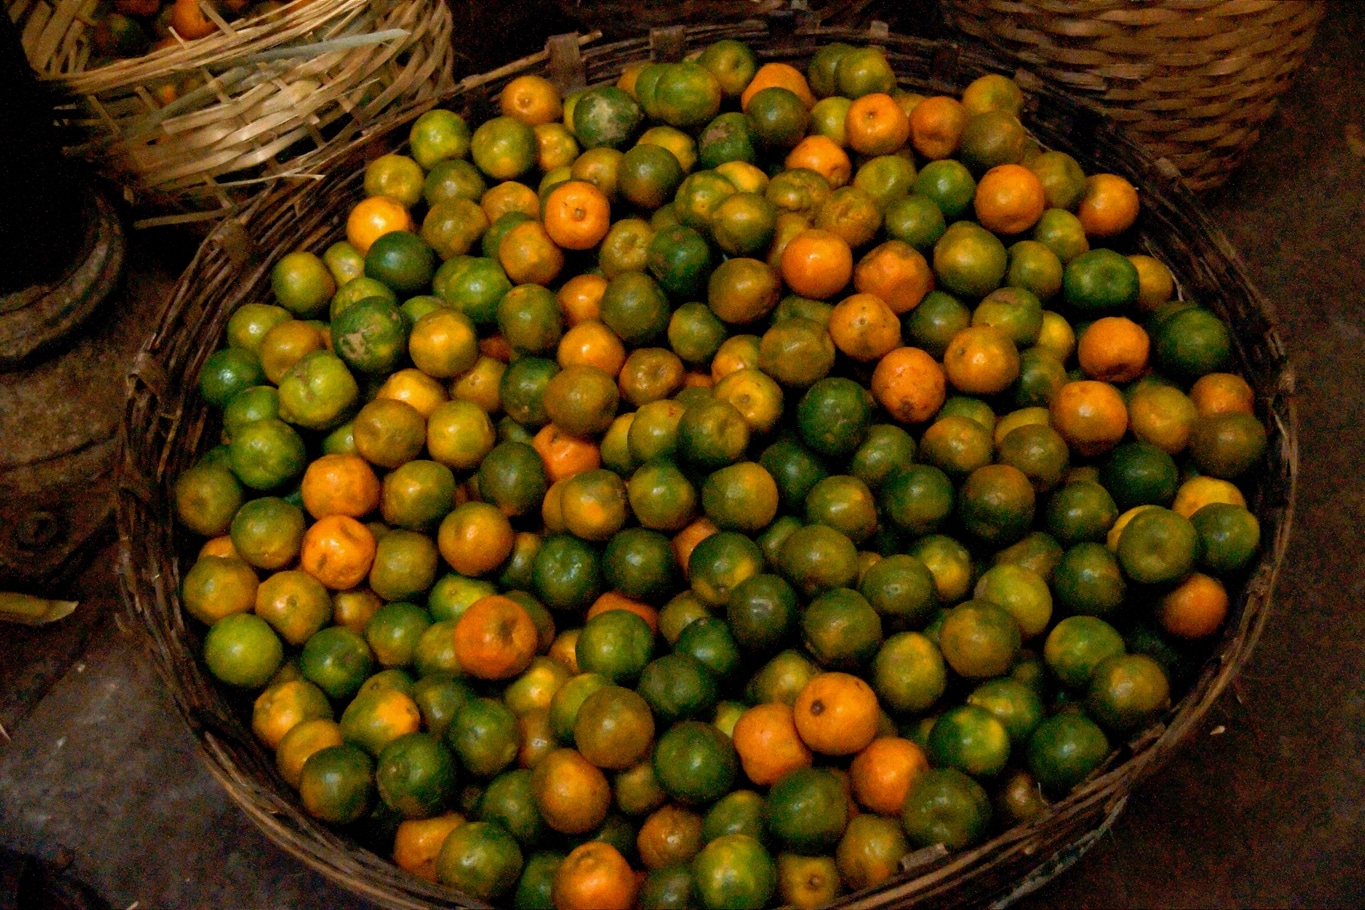 Les Indiens appellent ces fruits des oranges, pour moi ce sont des clémentines... Lors de mes voyages en Inde